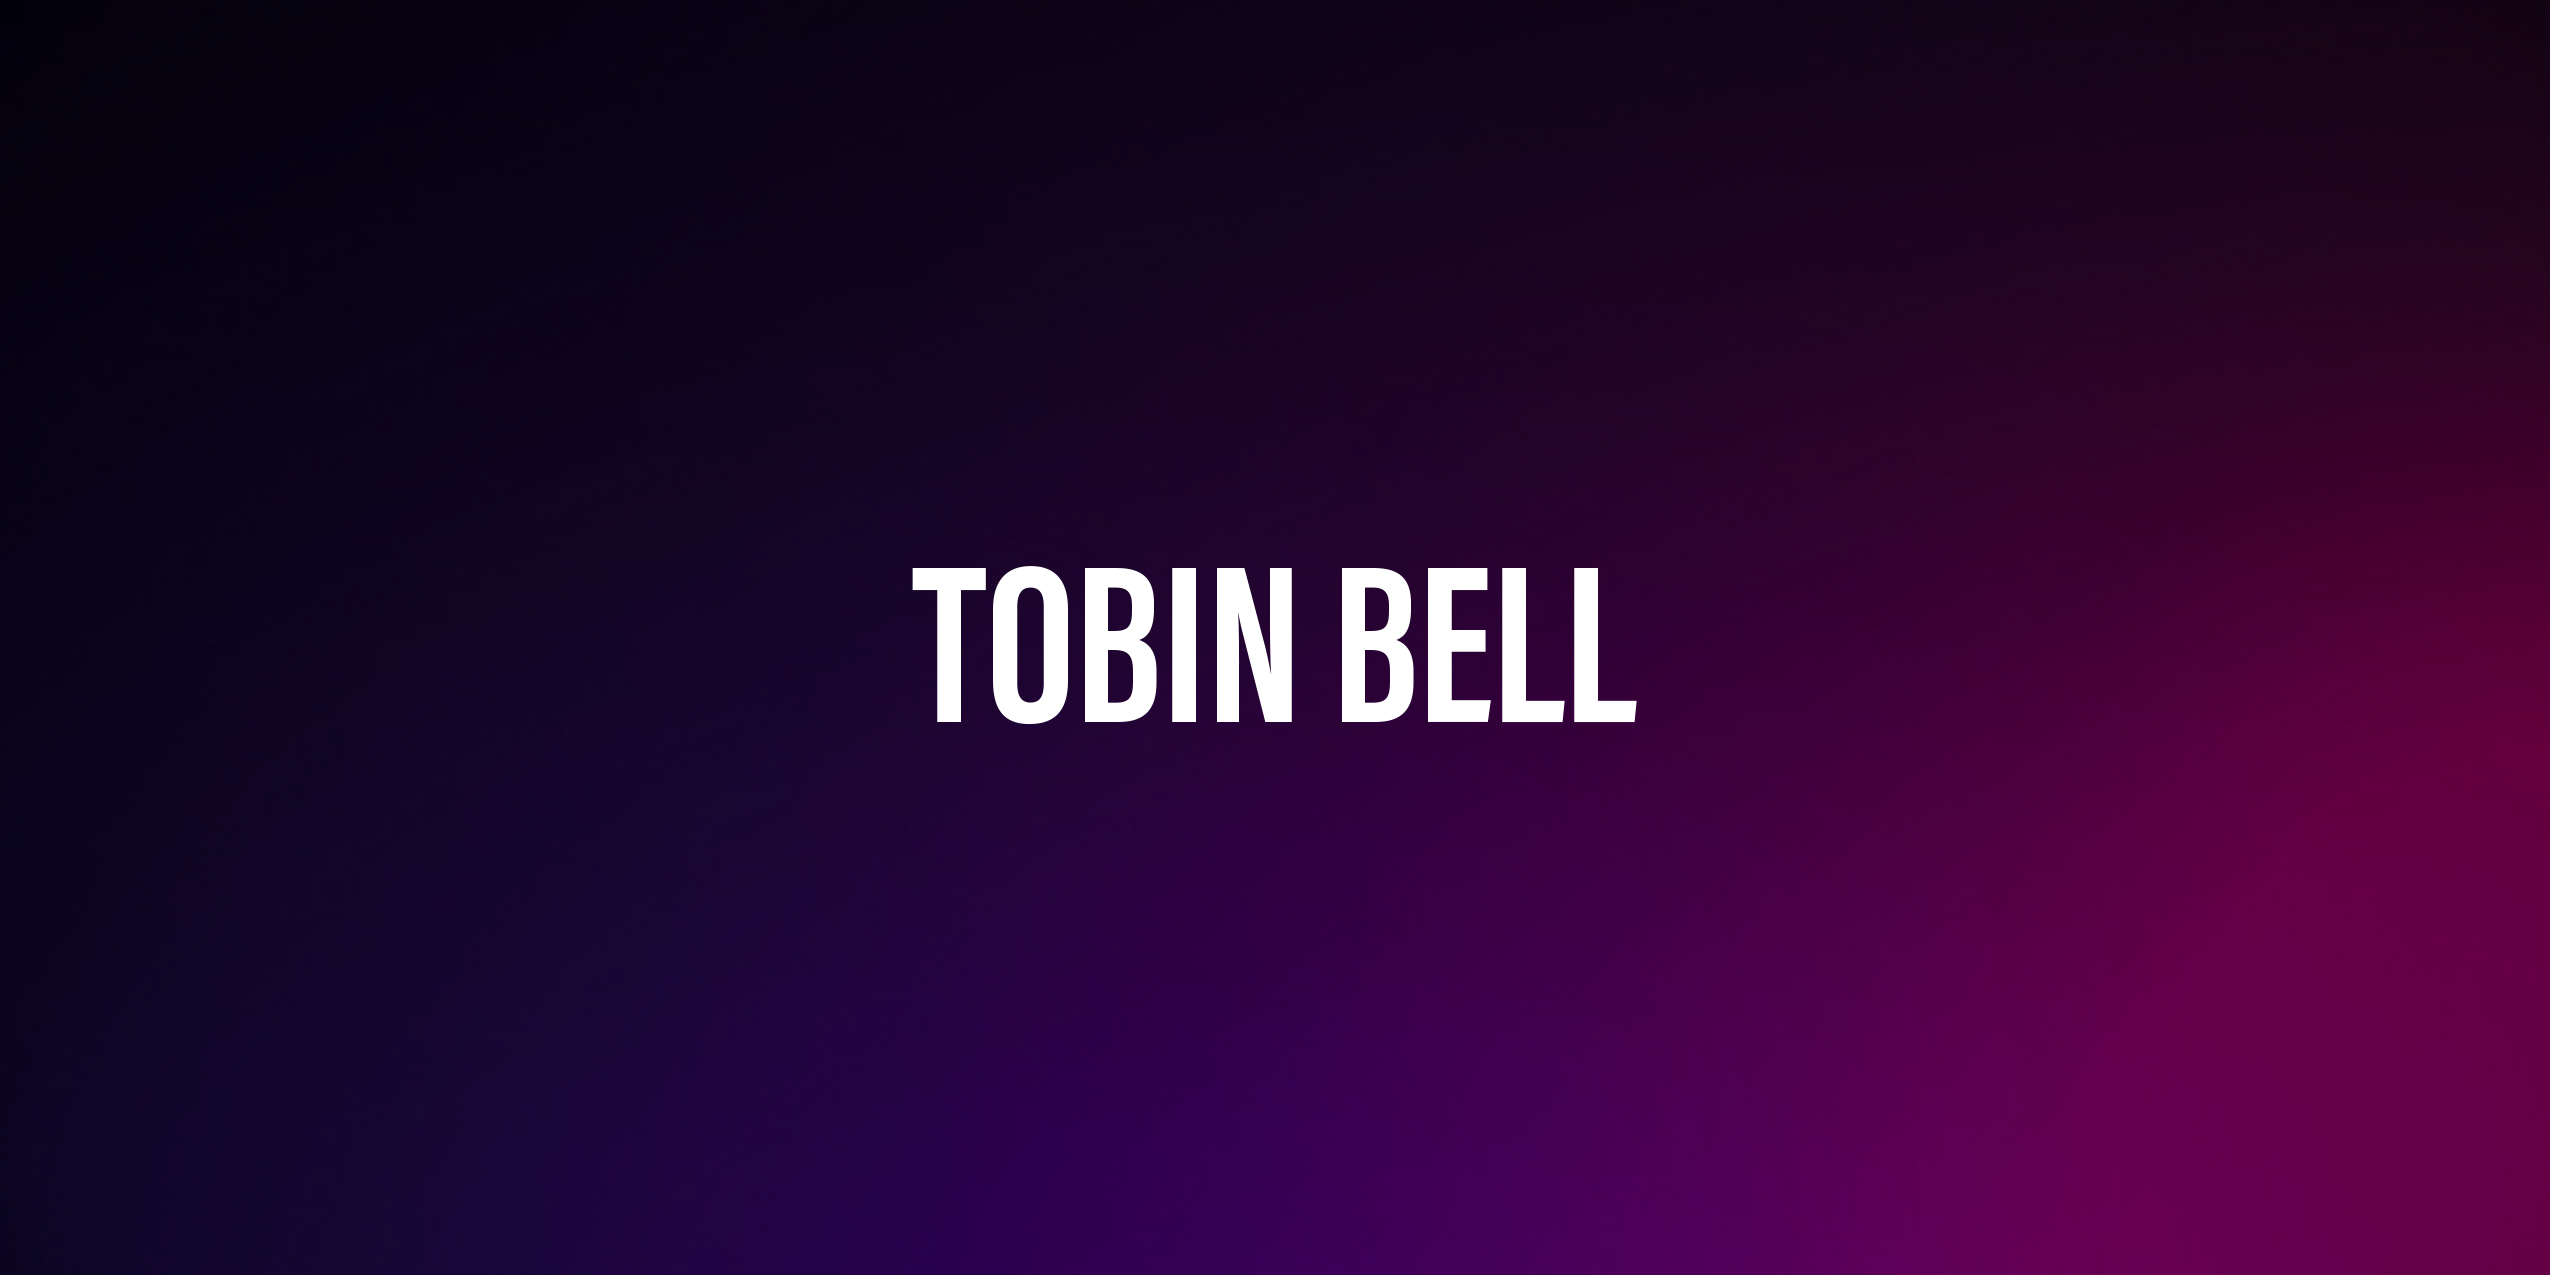 Tobin Bell – życiorys i filmografia